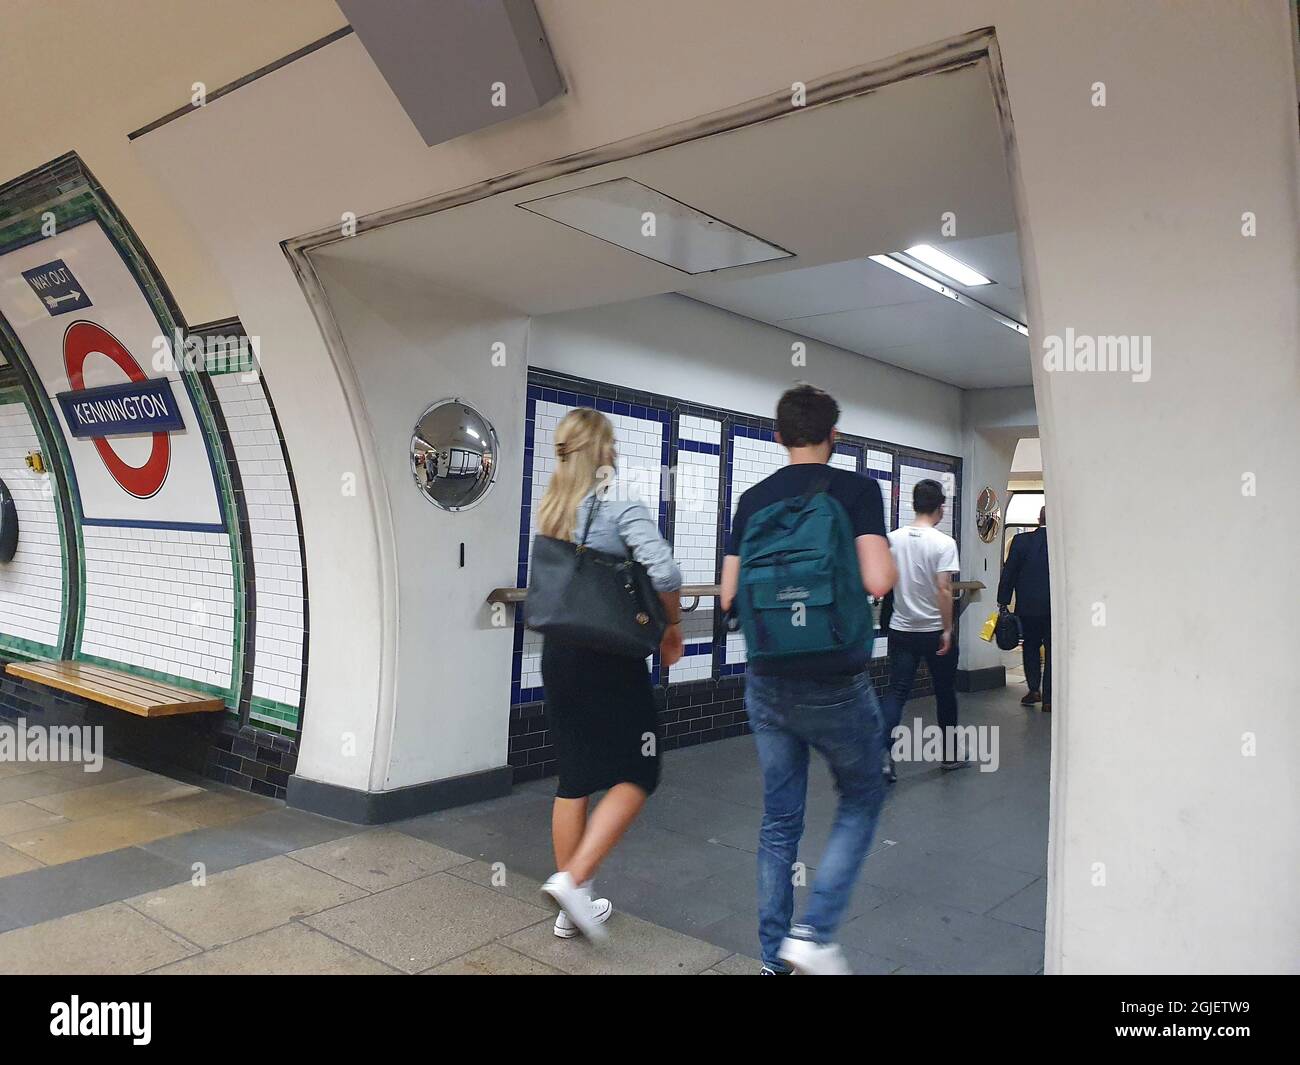 Londra, UK, 9 settembre 2021: Kennington Station ha nuovi tunnel più ampi e multipiattaforma che hanno aperto in tempo per un previsto aumento dei passeggeri quando la nuova linea di estensione della Norther inaugurerà il 20 settembre, collegando Kennington a Nine Elms e alla centrale elettrica di Battersea. Anna Watson/Alamy Live News Foto Stock